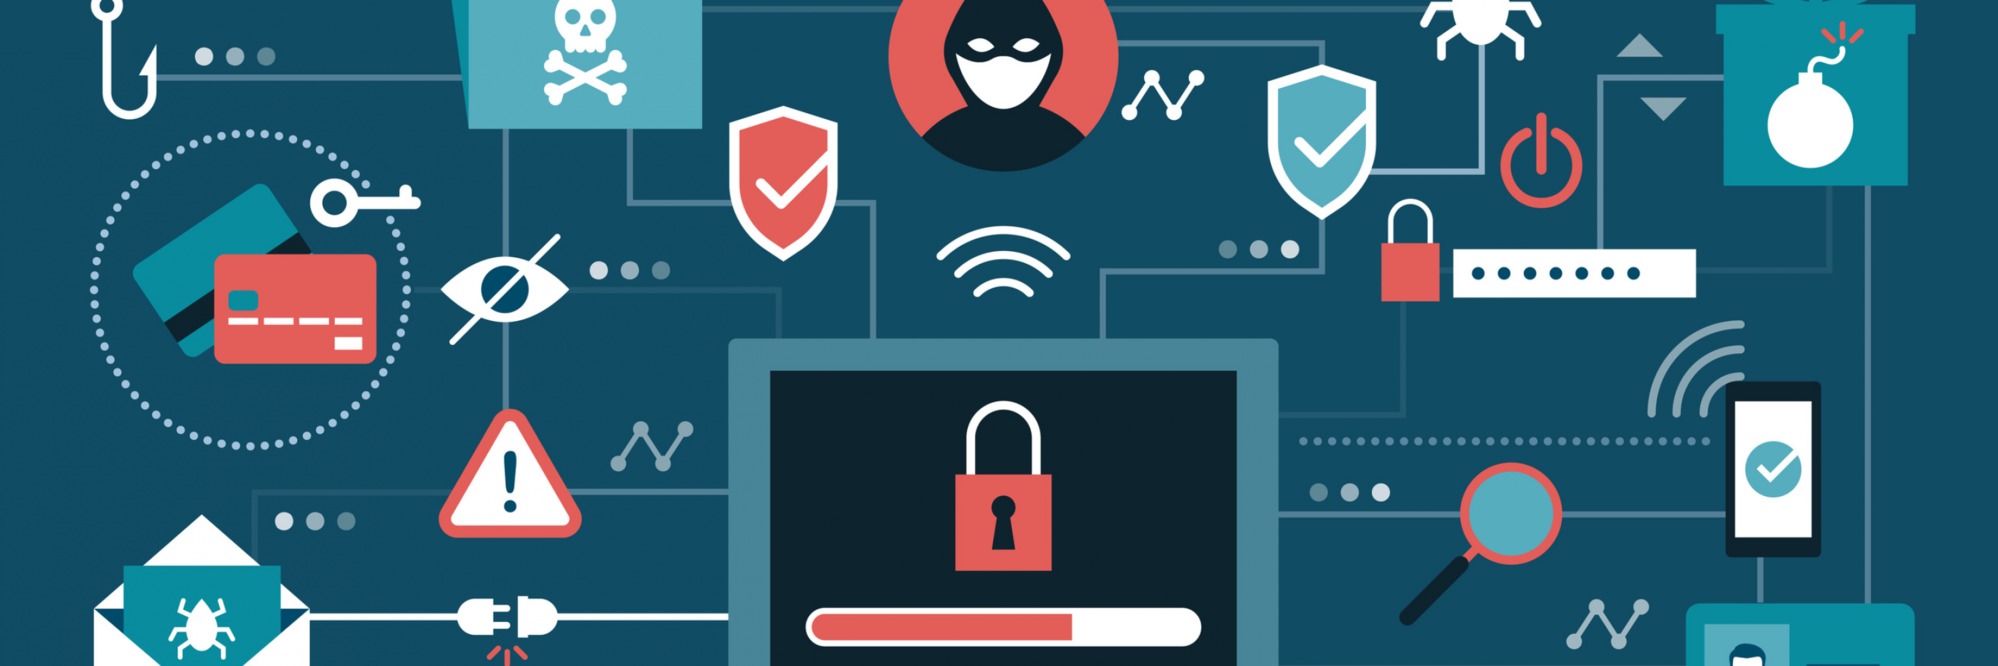 Corona als Köder - Cyber-Sicherheit spielt besonders jetzt eine entscheidende Rolle